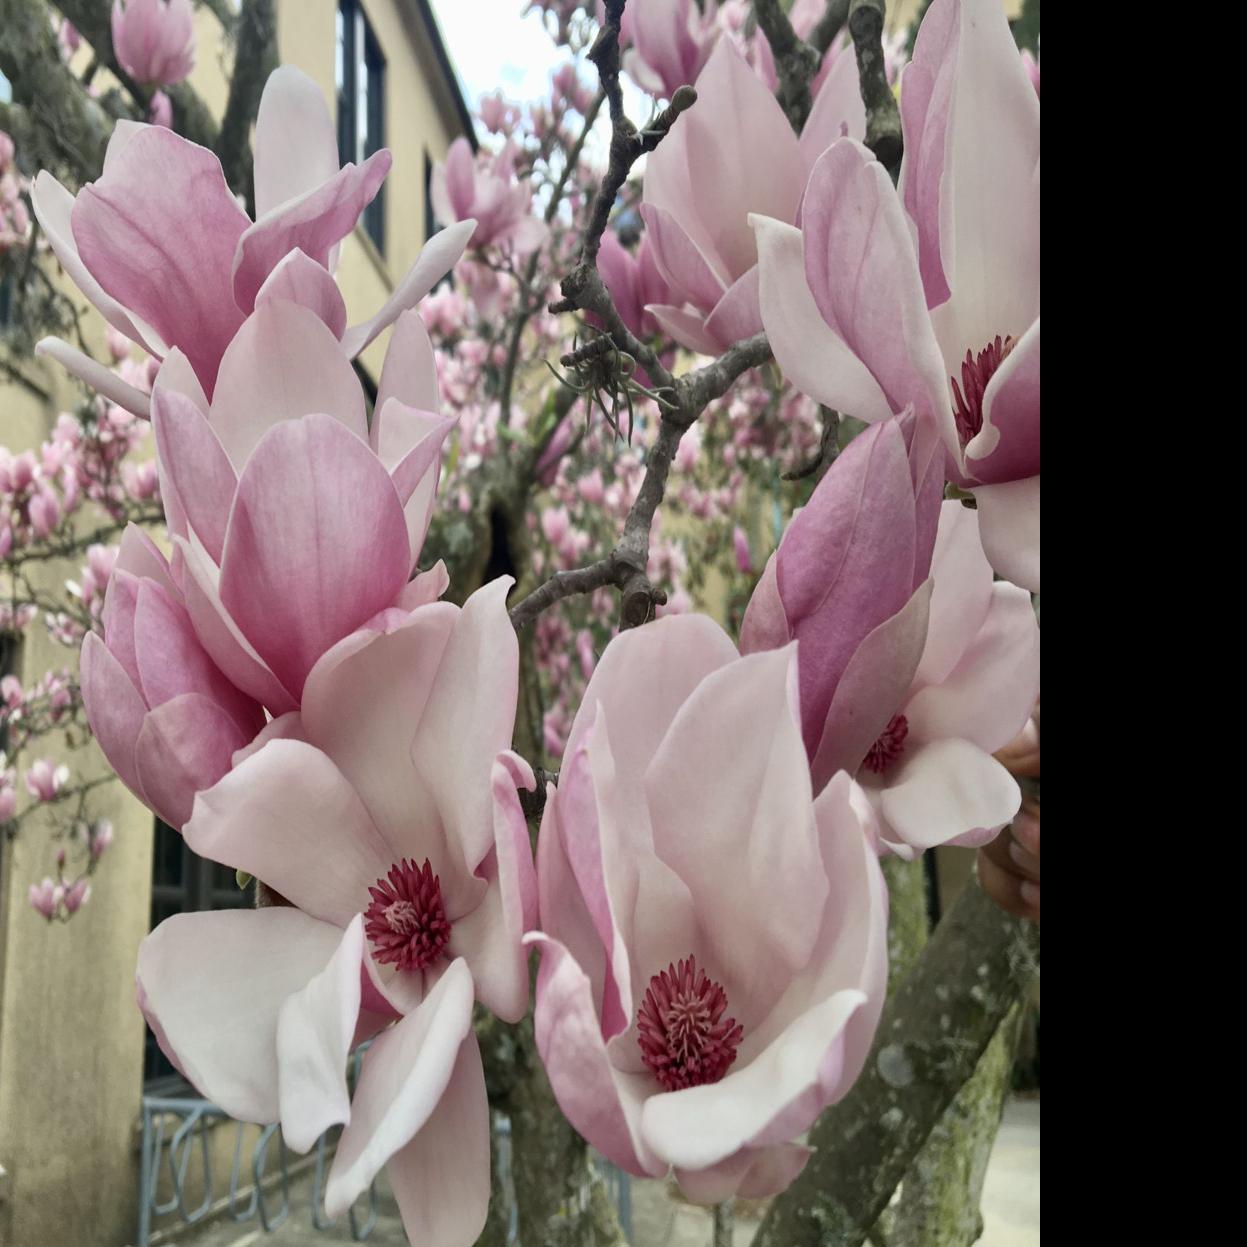 japanese magnolia tree